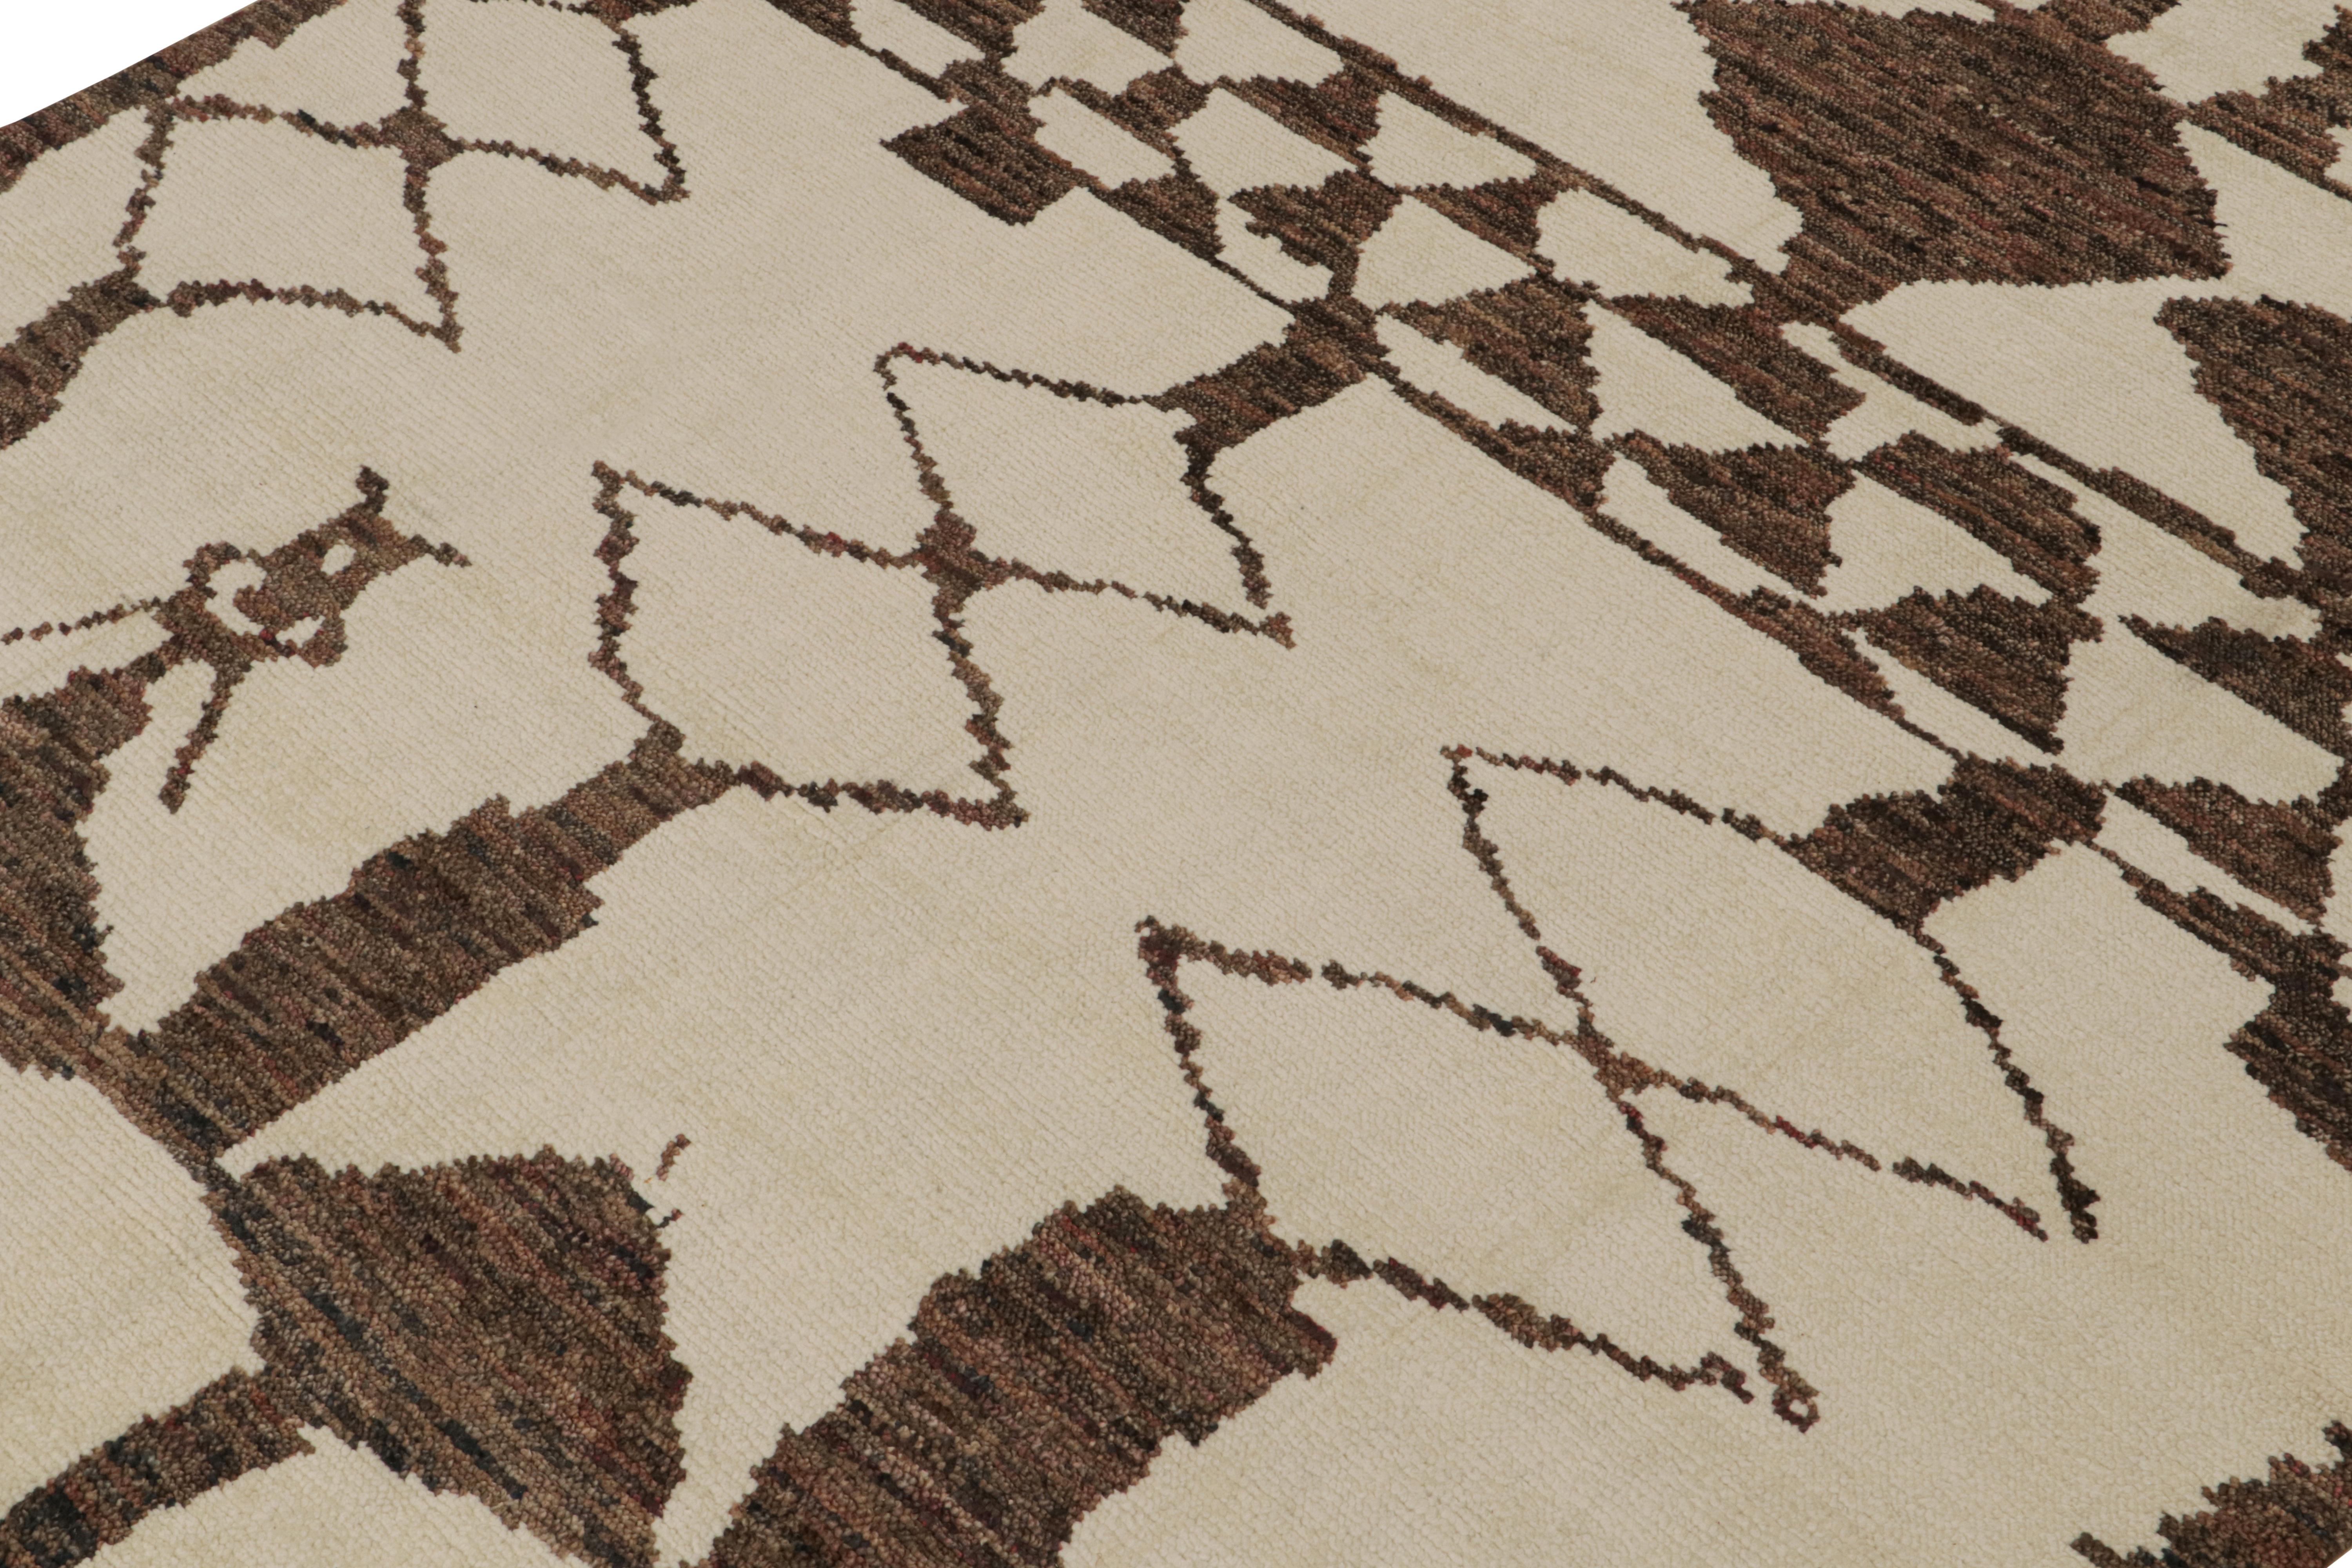 Indien Rug & Kilim's Moroccan Style Rug in Beige and Brown Geometric Patterns (tapis de style marocain à motifs géométriques beige et Brown) en vente